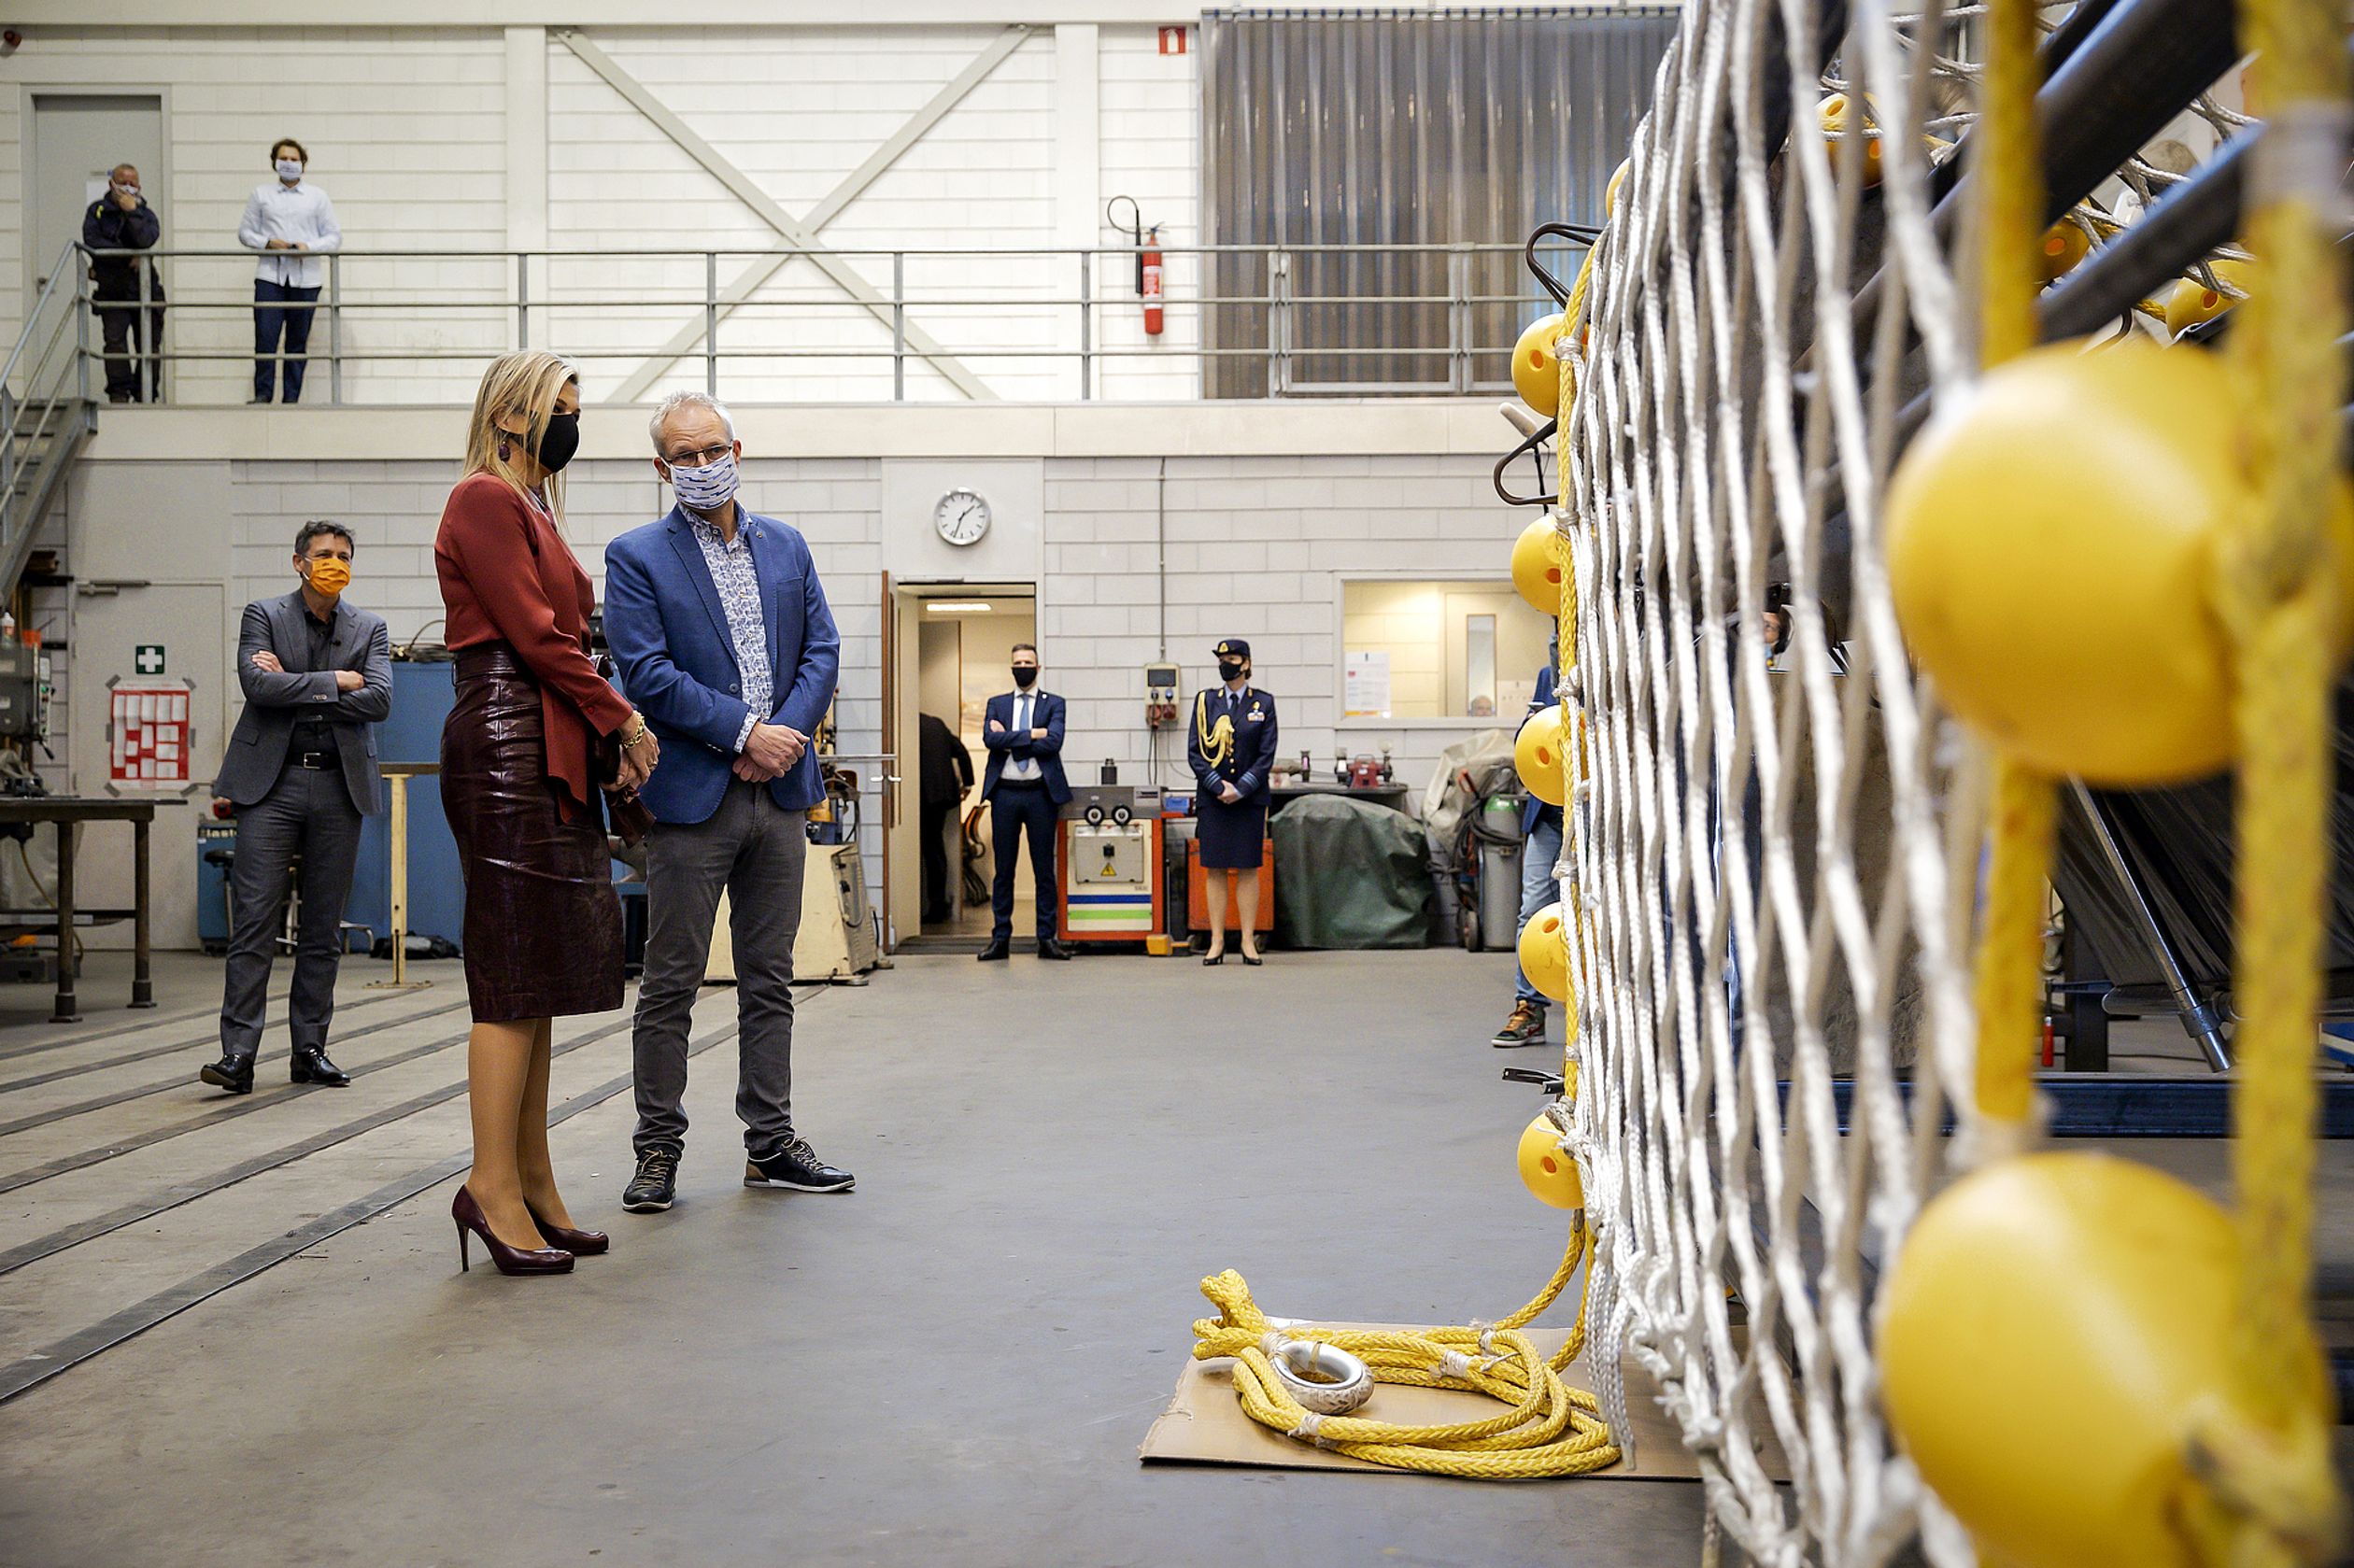 Máxima bracht op 19 november een bezoek aan het bedrijf Boeg B.V. en Boeg Nautic in Scheveningen.